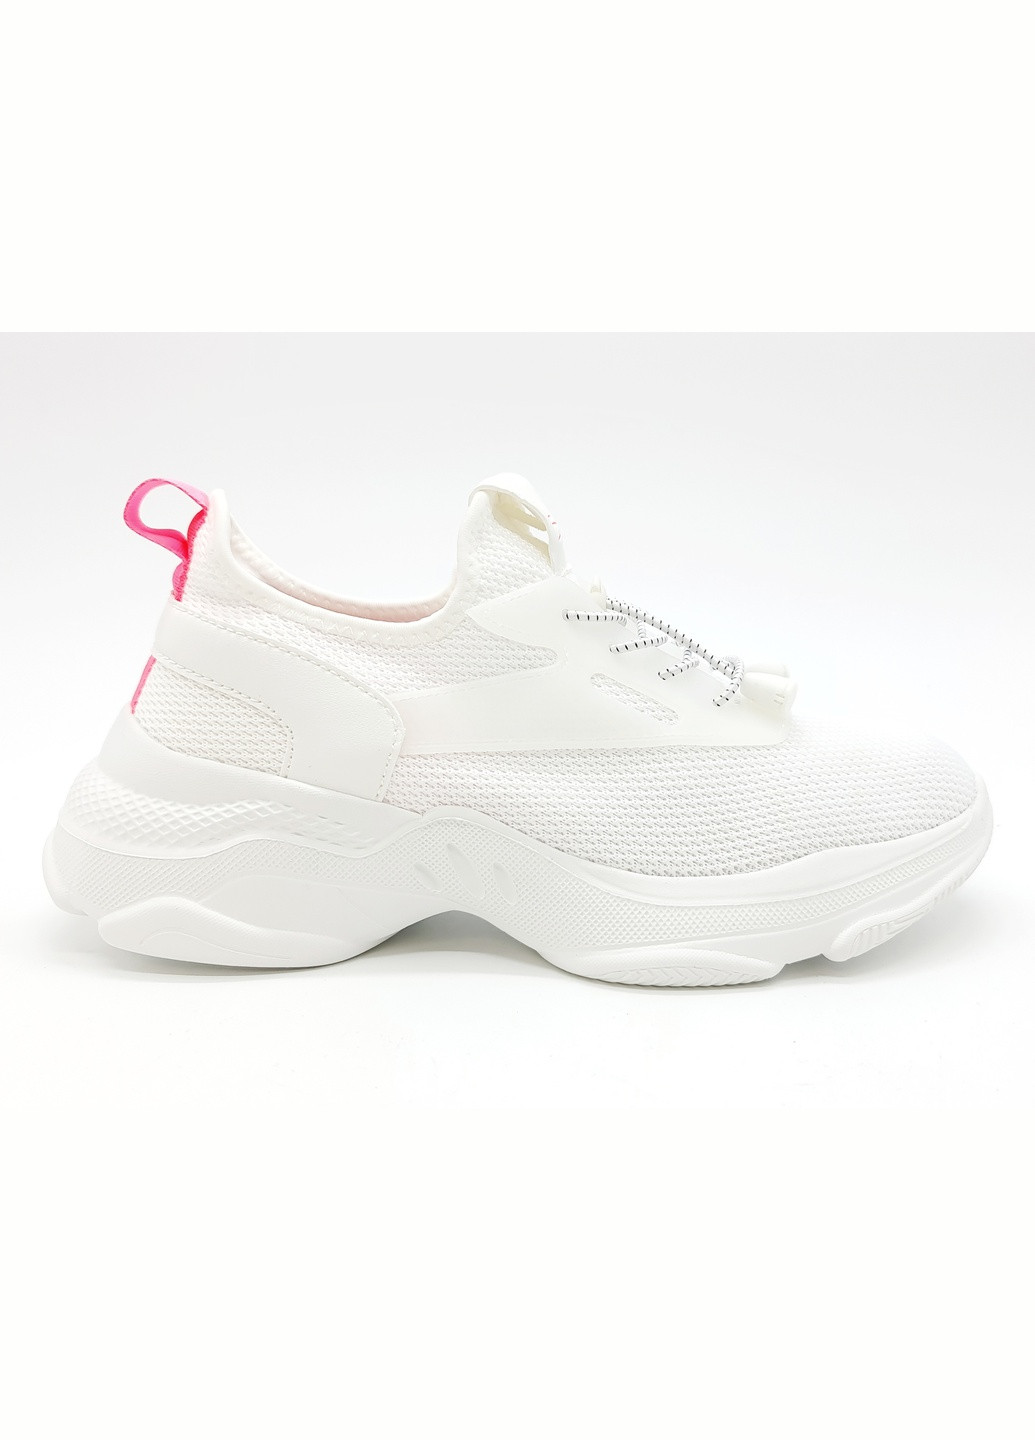 Білі всесезонні жіночі кросівки білі текстиль sl-16-3 25 см (р) Stilli